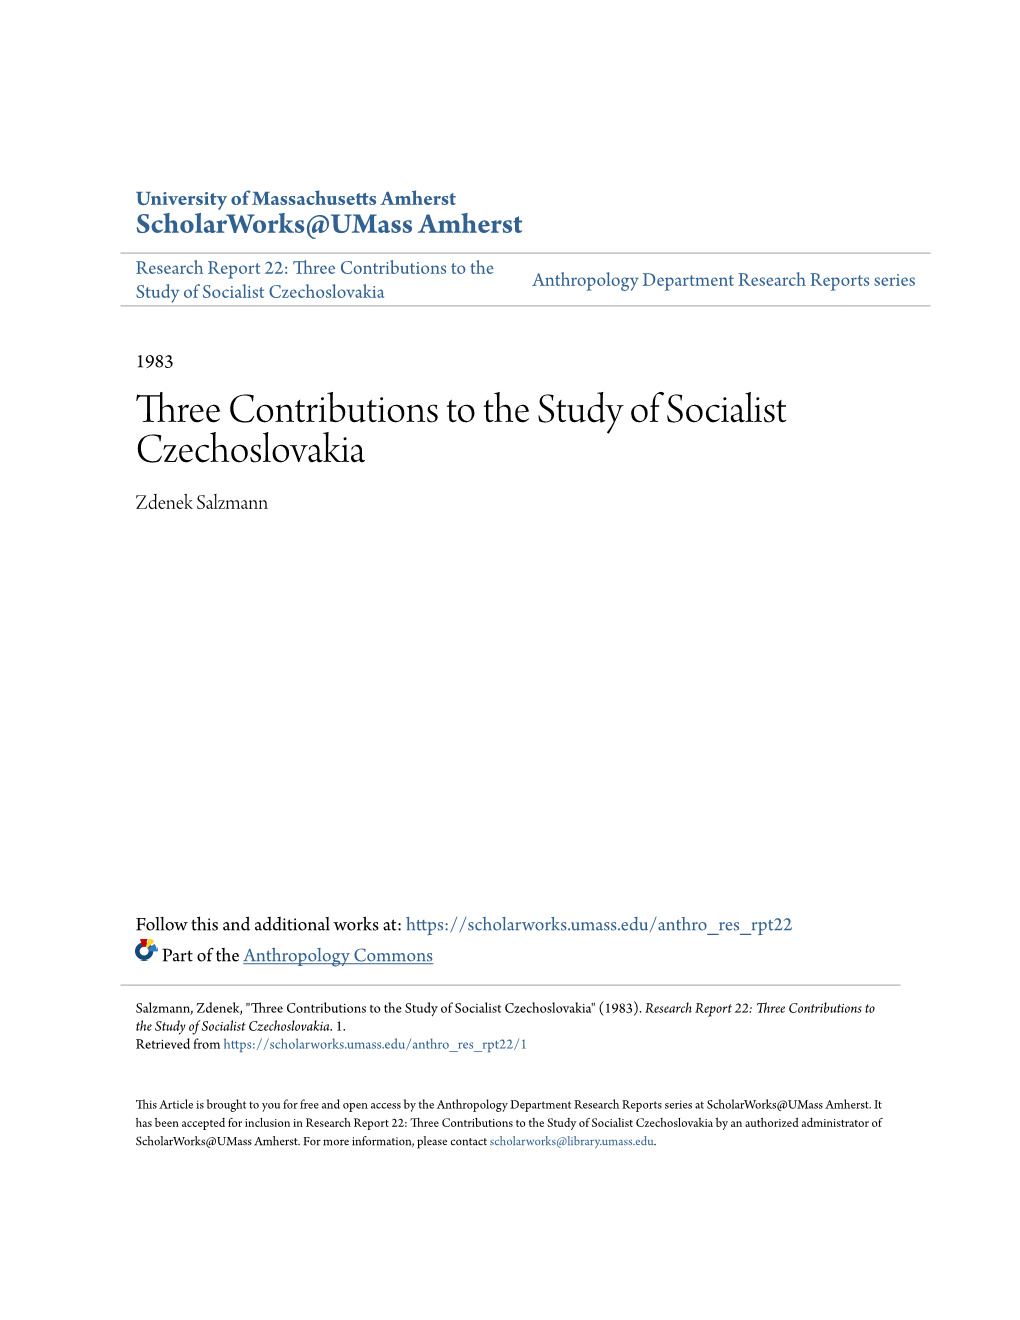 Three Contributions to the Study of Socialist Czechoslovakia Zdenek Salzmann